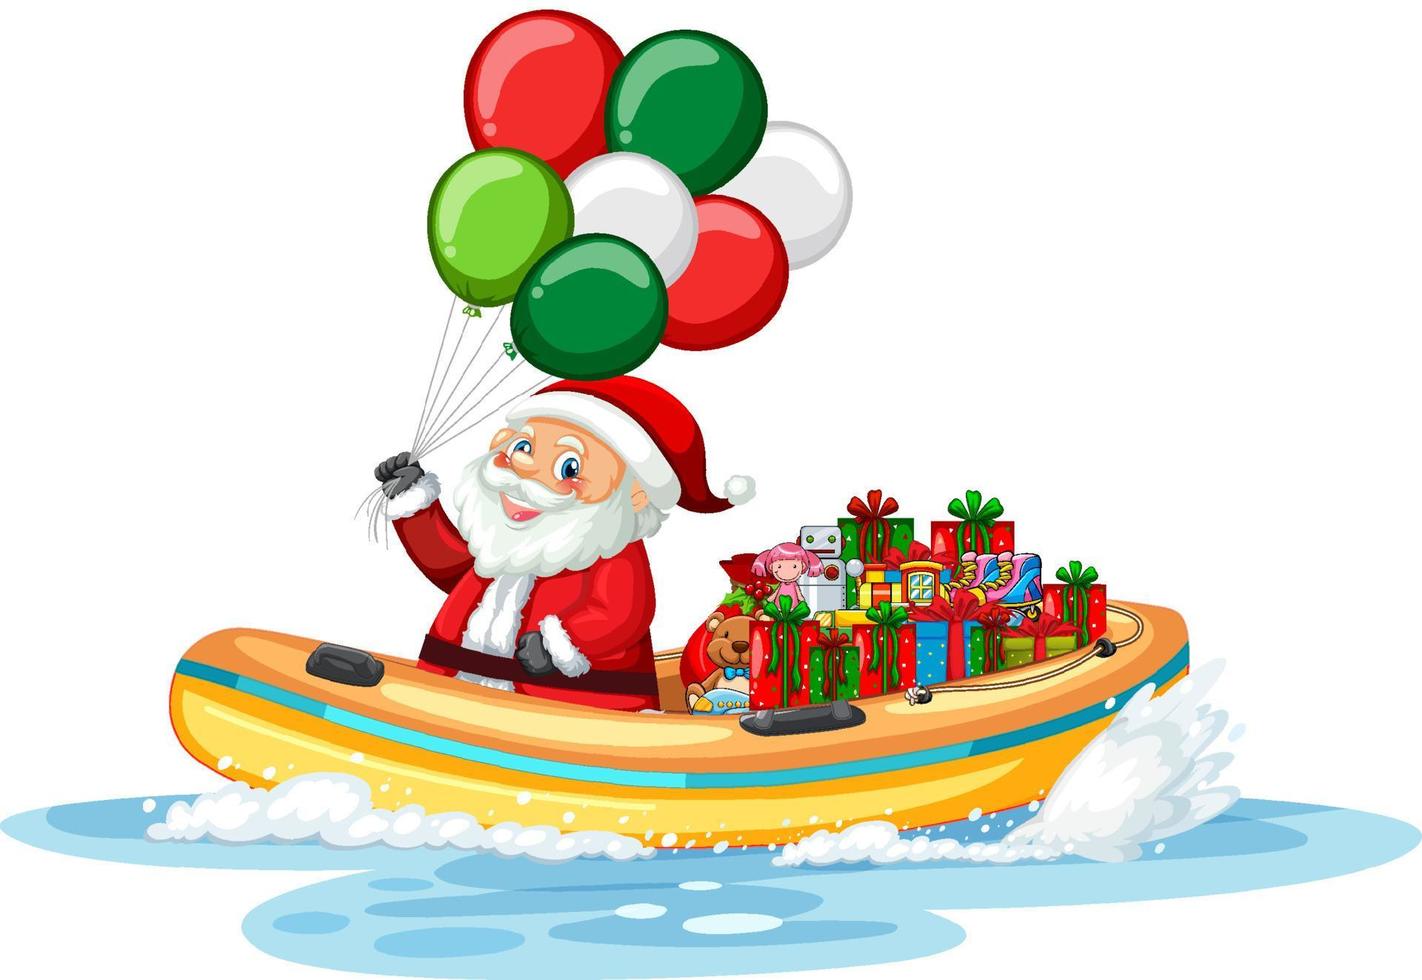 de kerstman op de boot met zijn geschenken vector